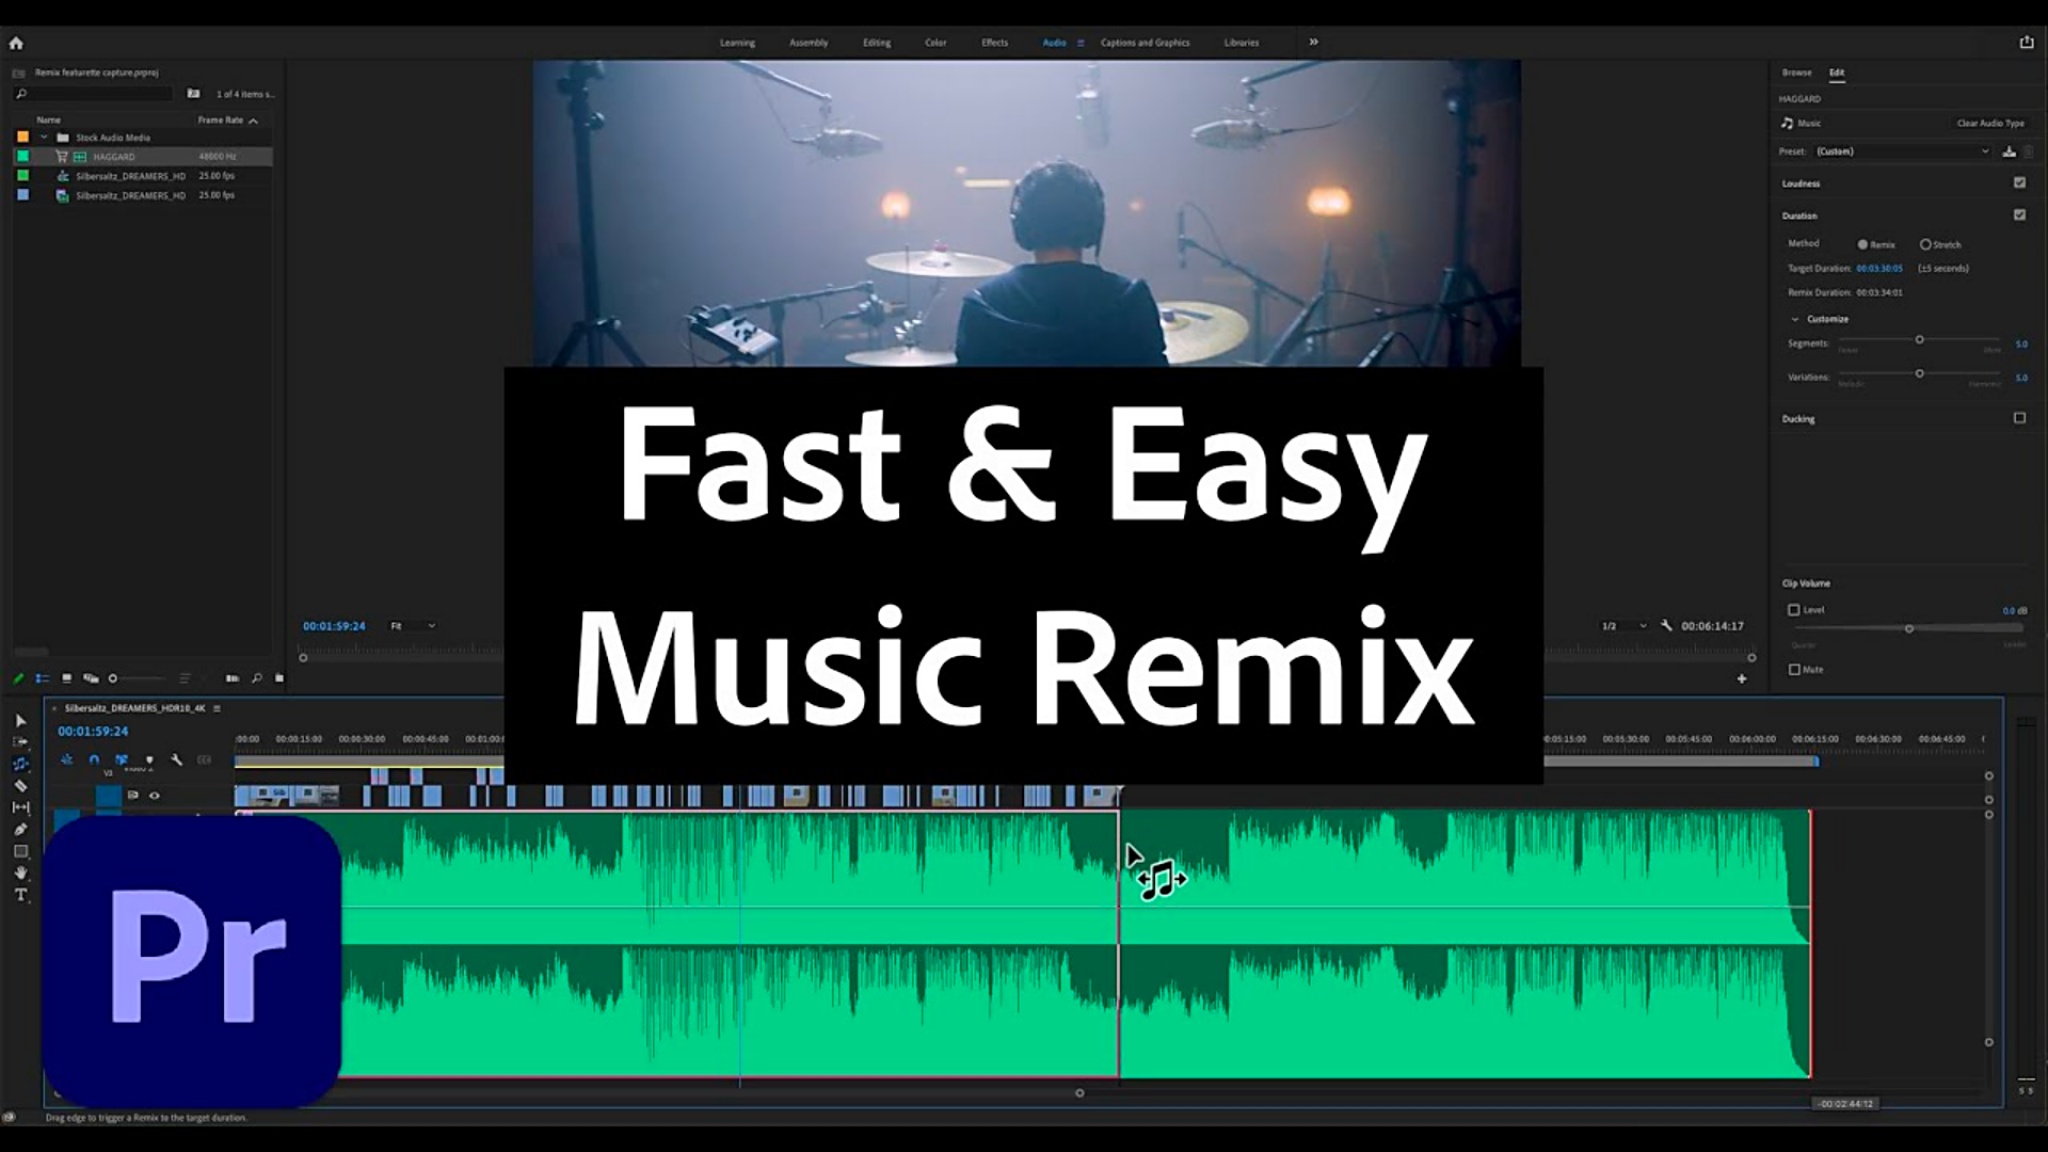 Adobe Premiere Pro cập nhật tính năng Music Remix, hỗ trợ người dùng canh chỉnh nhạc tự động bằng AI